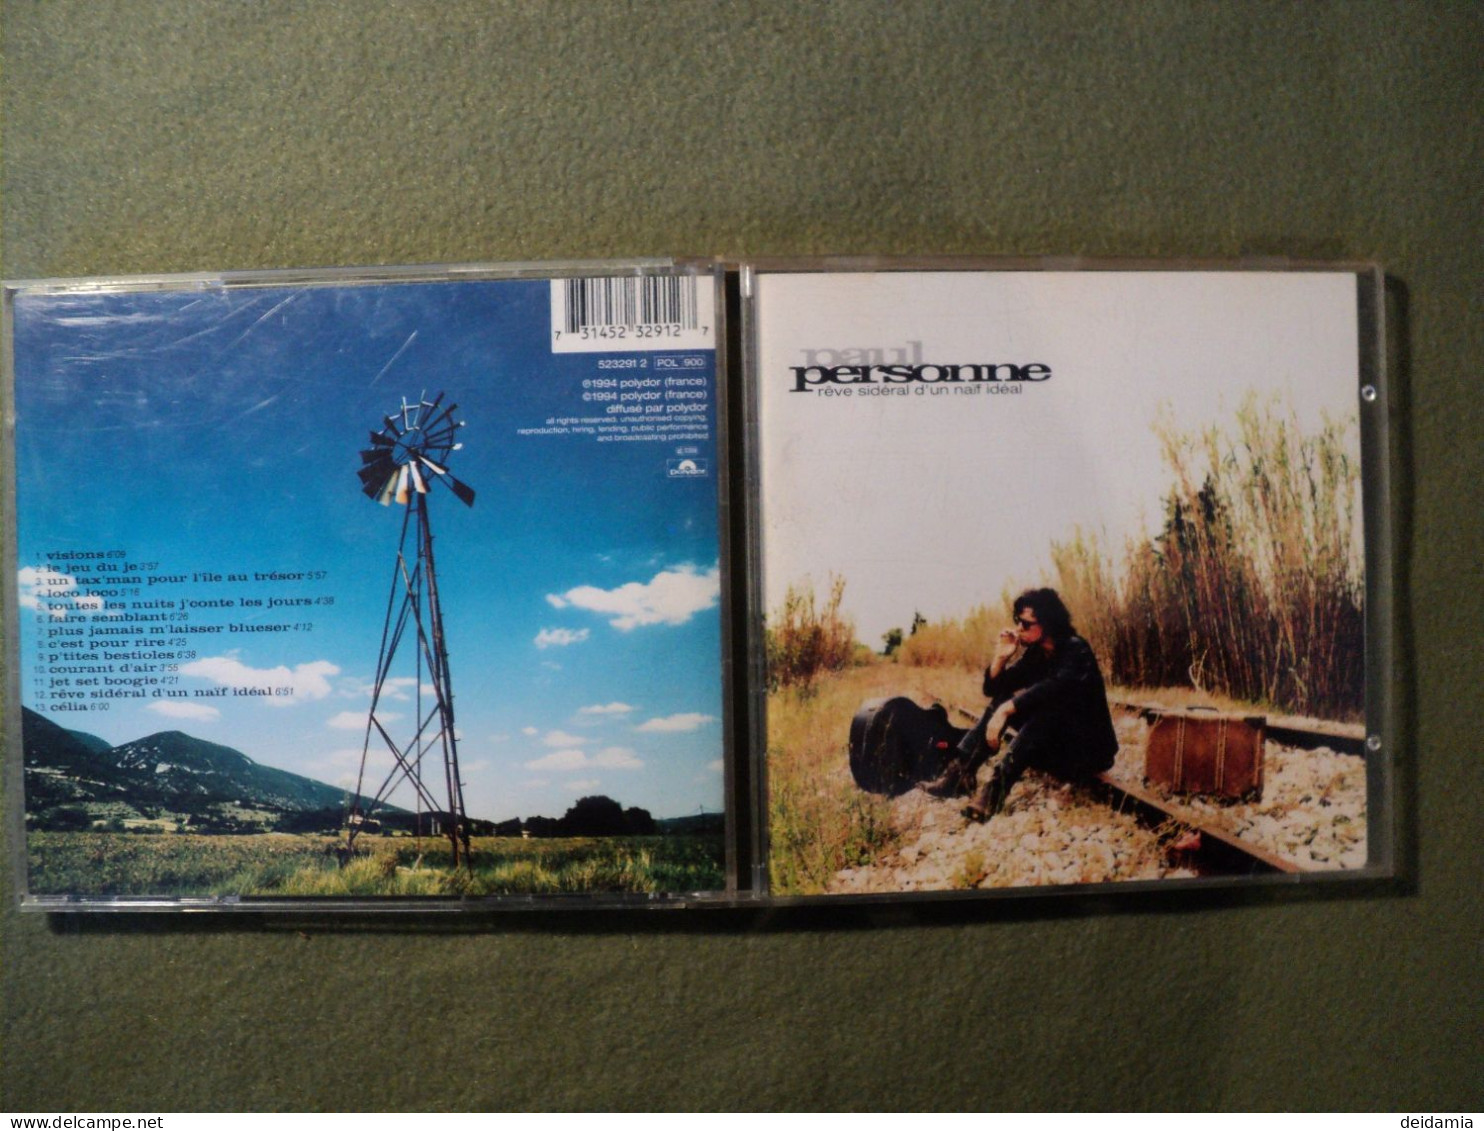 PAUL PERSONNE. CD 13 TITRES DE 1994. POLYDOR 523291 2 VISIONS / LE JEU DU JEU / UN TAX MAN POUR L ILE AU TRESOR / LOCO L - Andere - Franstalig